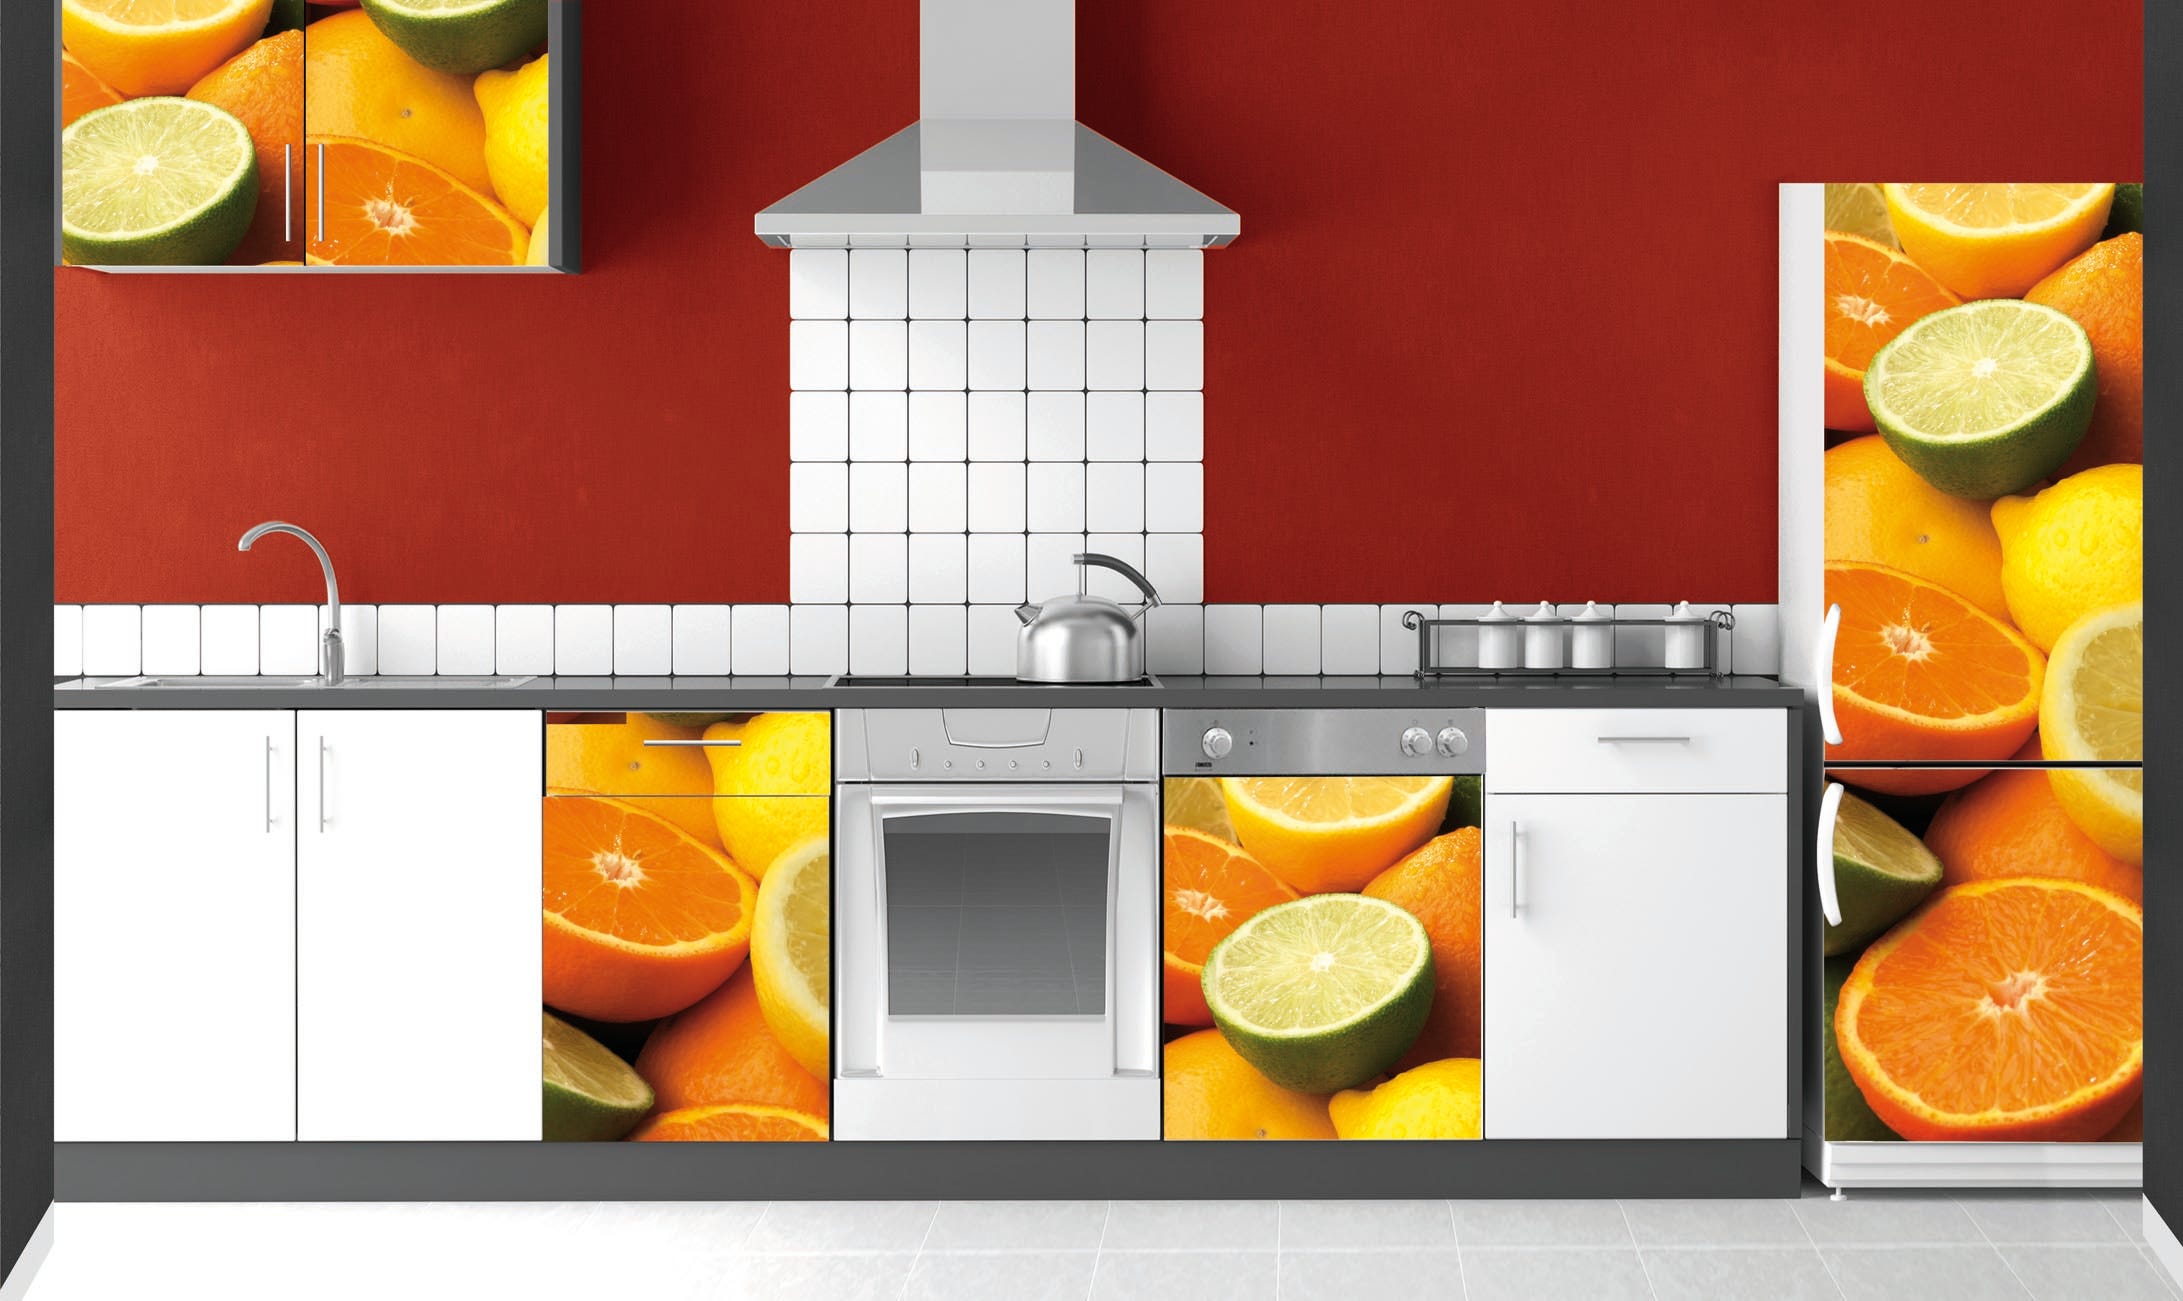 Adhesivo del frigorifero decorativo, foto di una miscela di agrumi, arance,  limoni e limoni, 180 cm x 60 cm